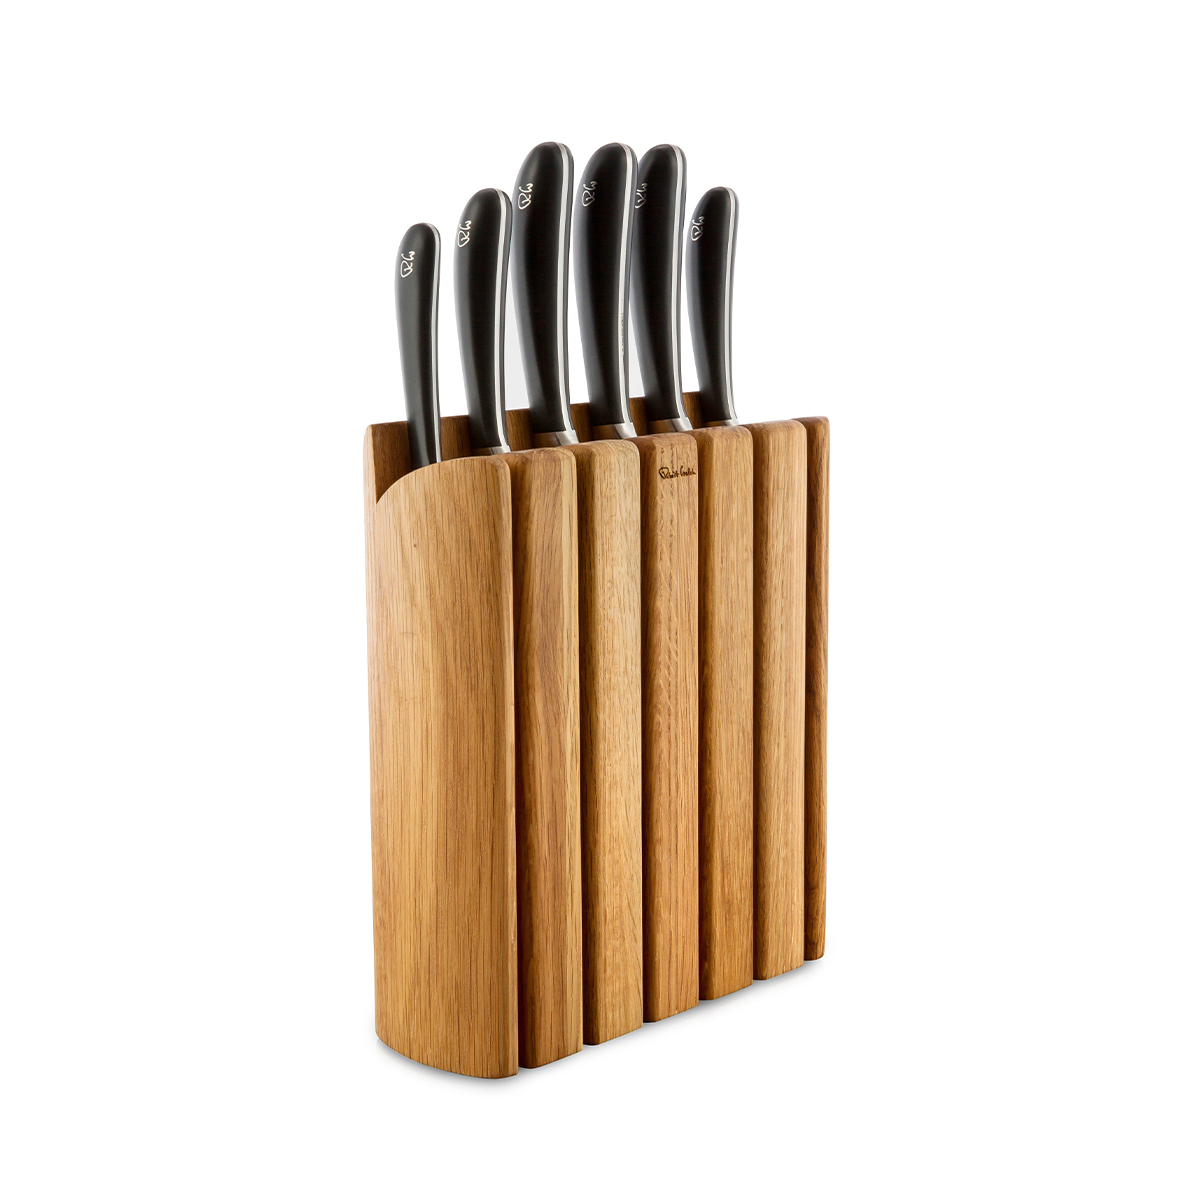 Noże SIGNATURE w drewnianym bloku 6 szt. / Robert Welch - Połączenie estetyki i funkcjonalności dla Twojej kuchni. Noże posiadają czarne rękojeści